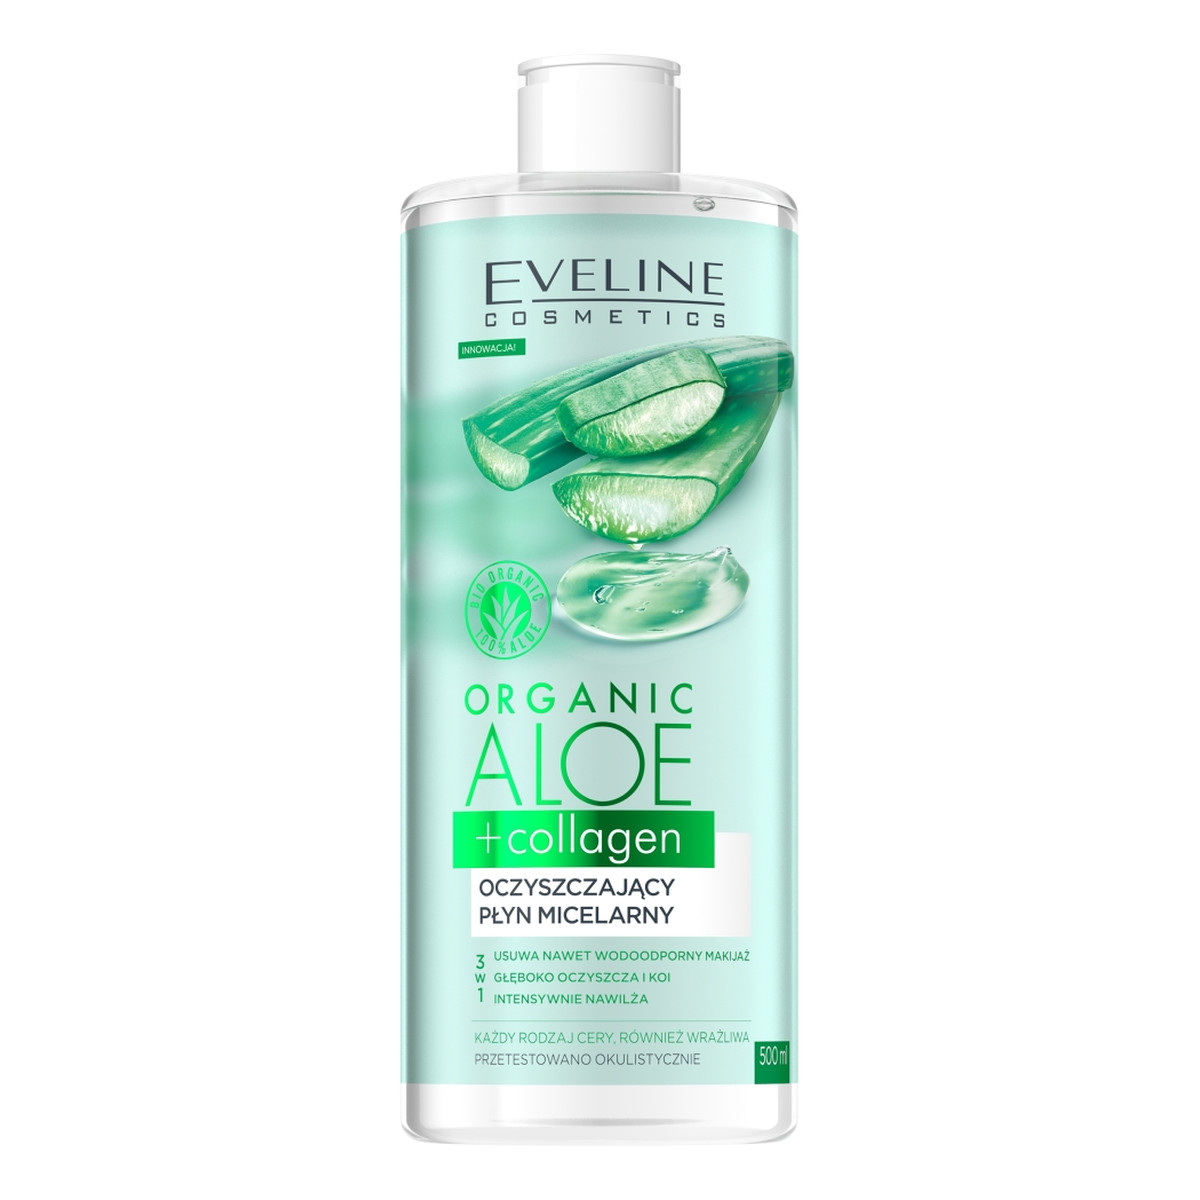 Eveline Organic aloe + collagen oczyszczający płyn micelarny 3w1